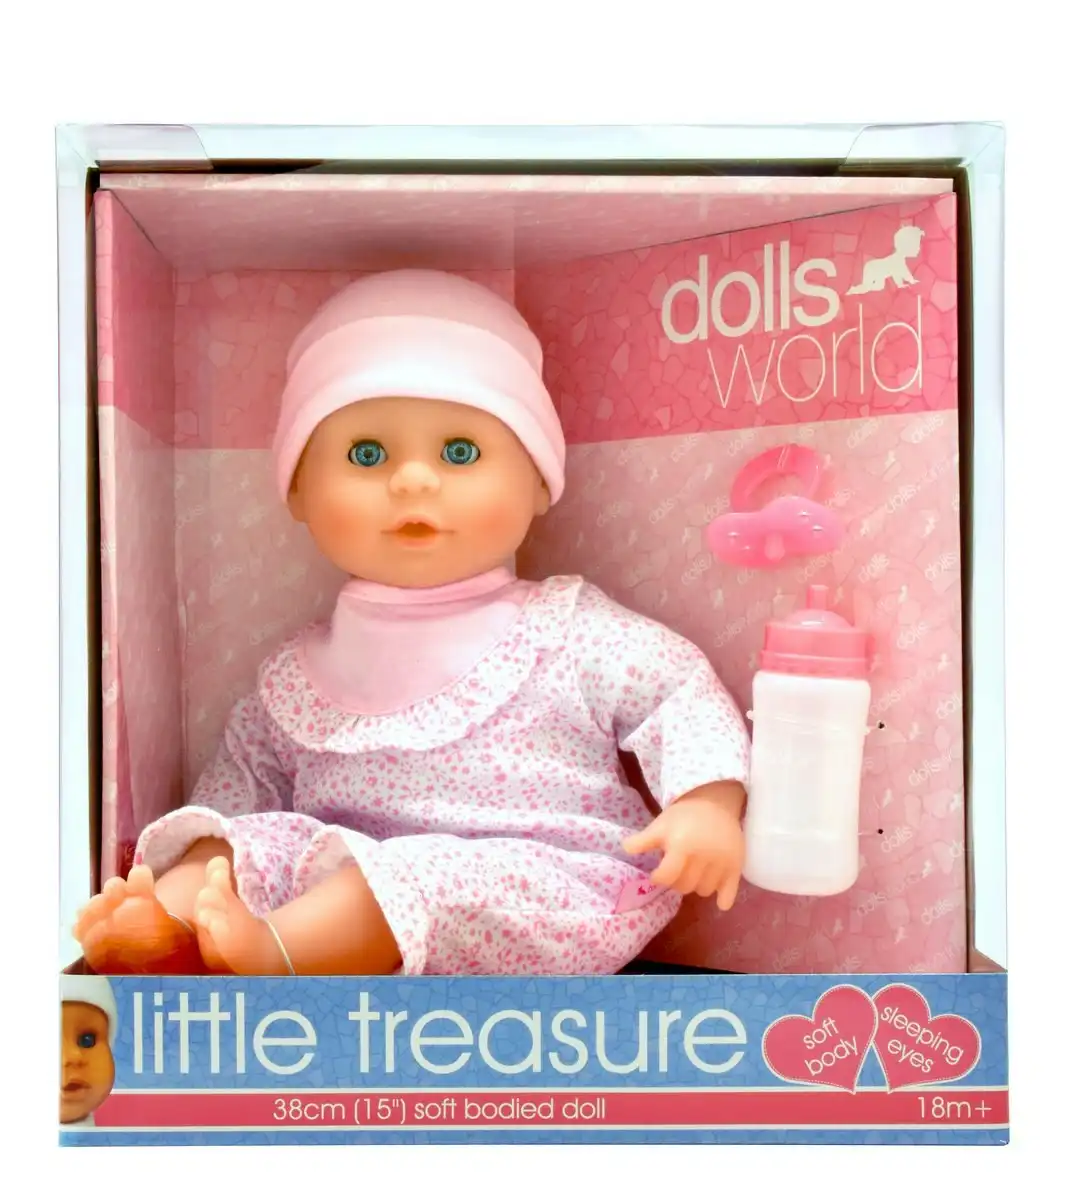 DollsWorld - Little Treasure 38cm